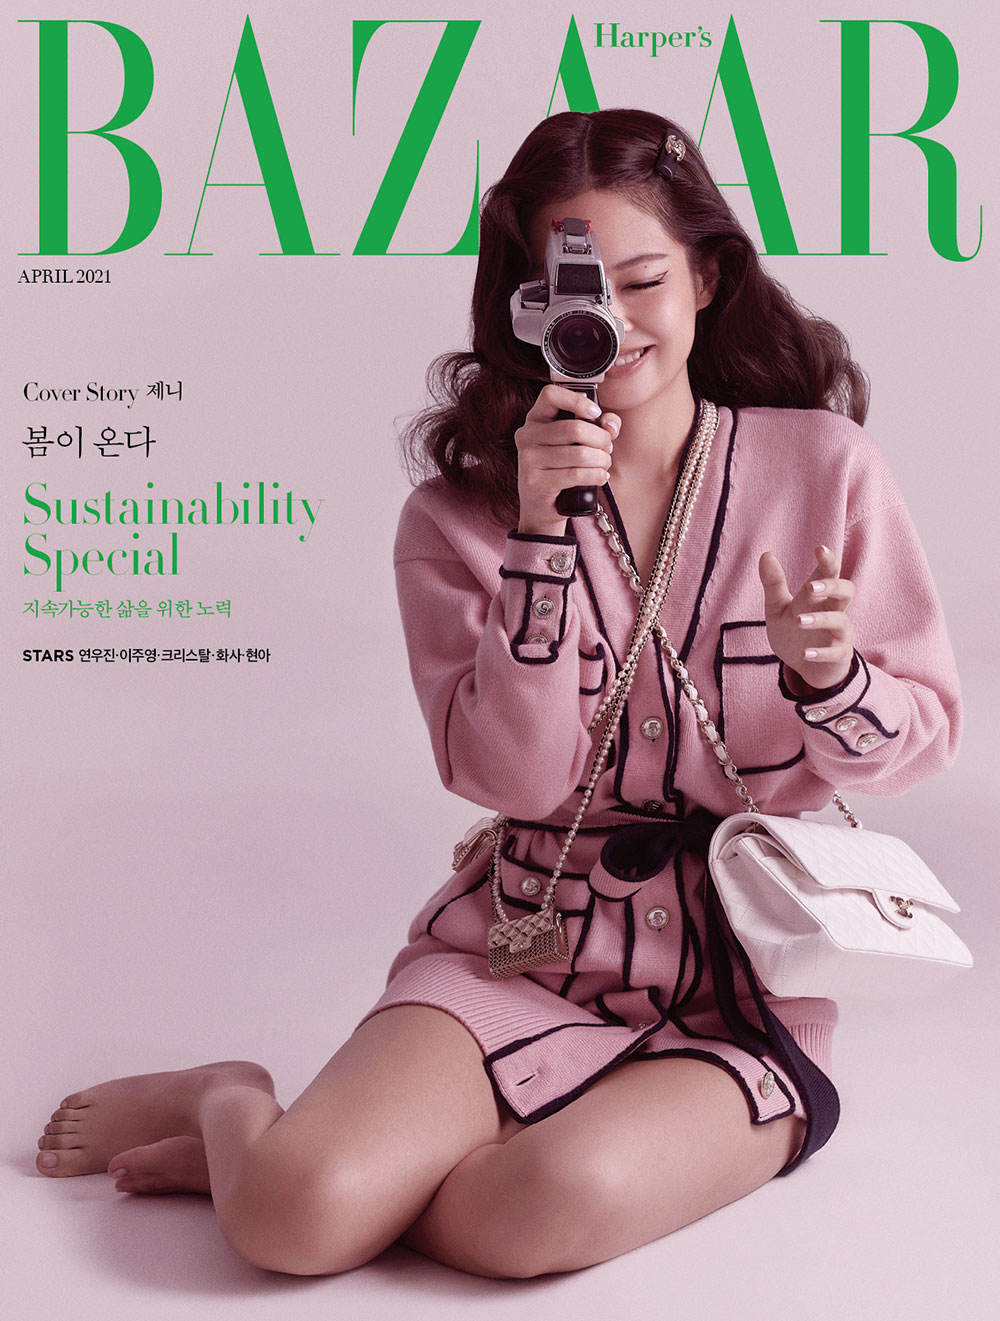 Jennie BLACKPINK: Vẻ đẹp tự nhiên là vẻ đẹp hoàn mỹ nhất | Harper's Bazaar